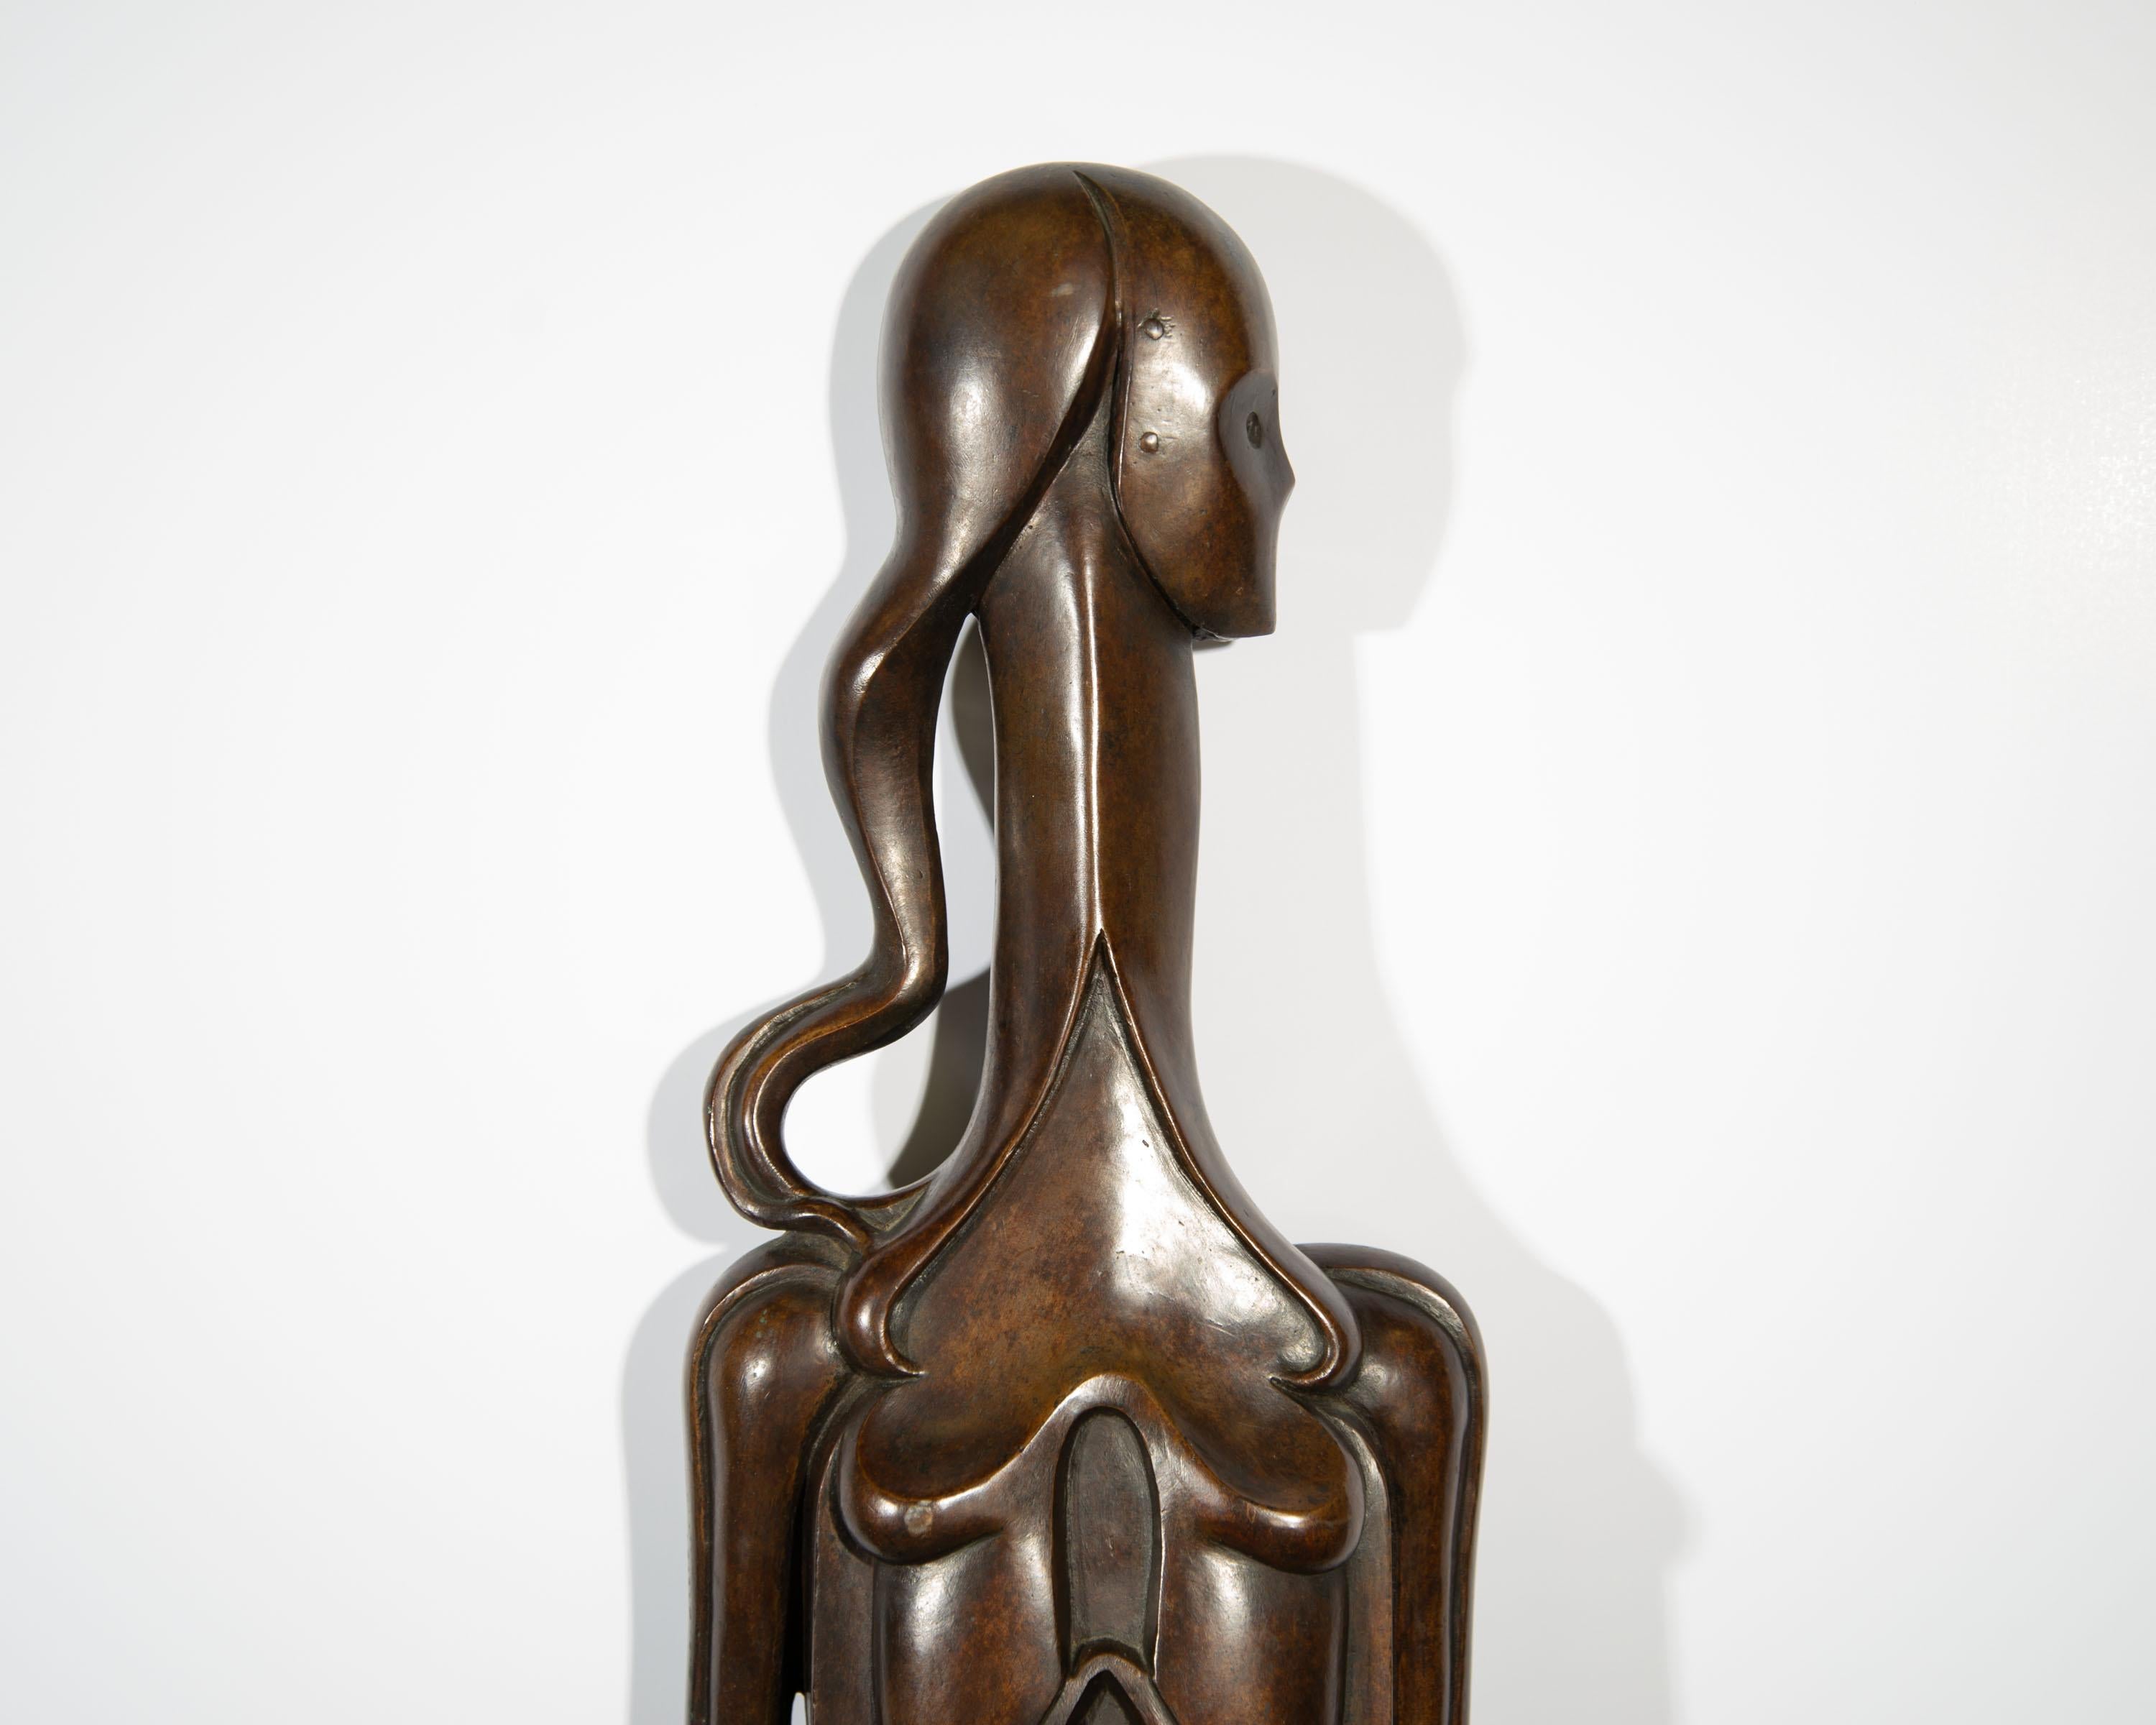 Isidore Grossman Signed 1955 “Fegele” Bronze Sculpture of a Figure For Sale 3